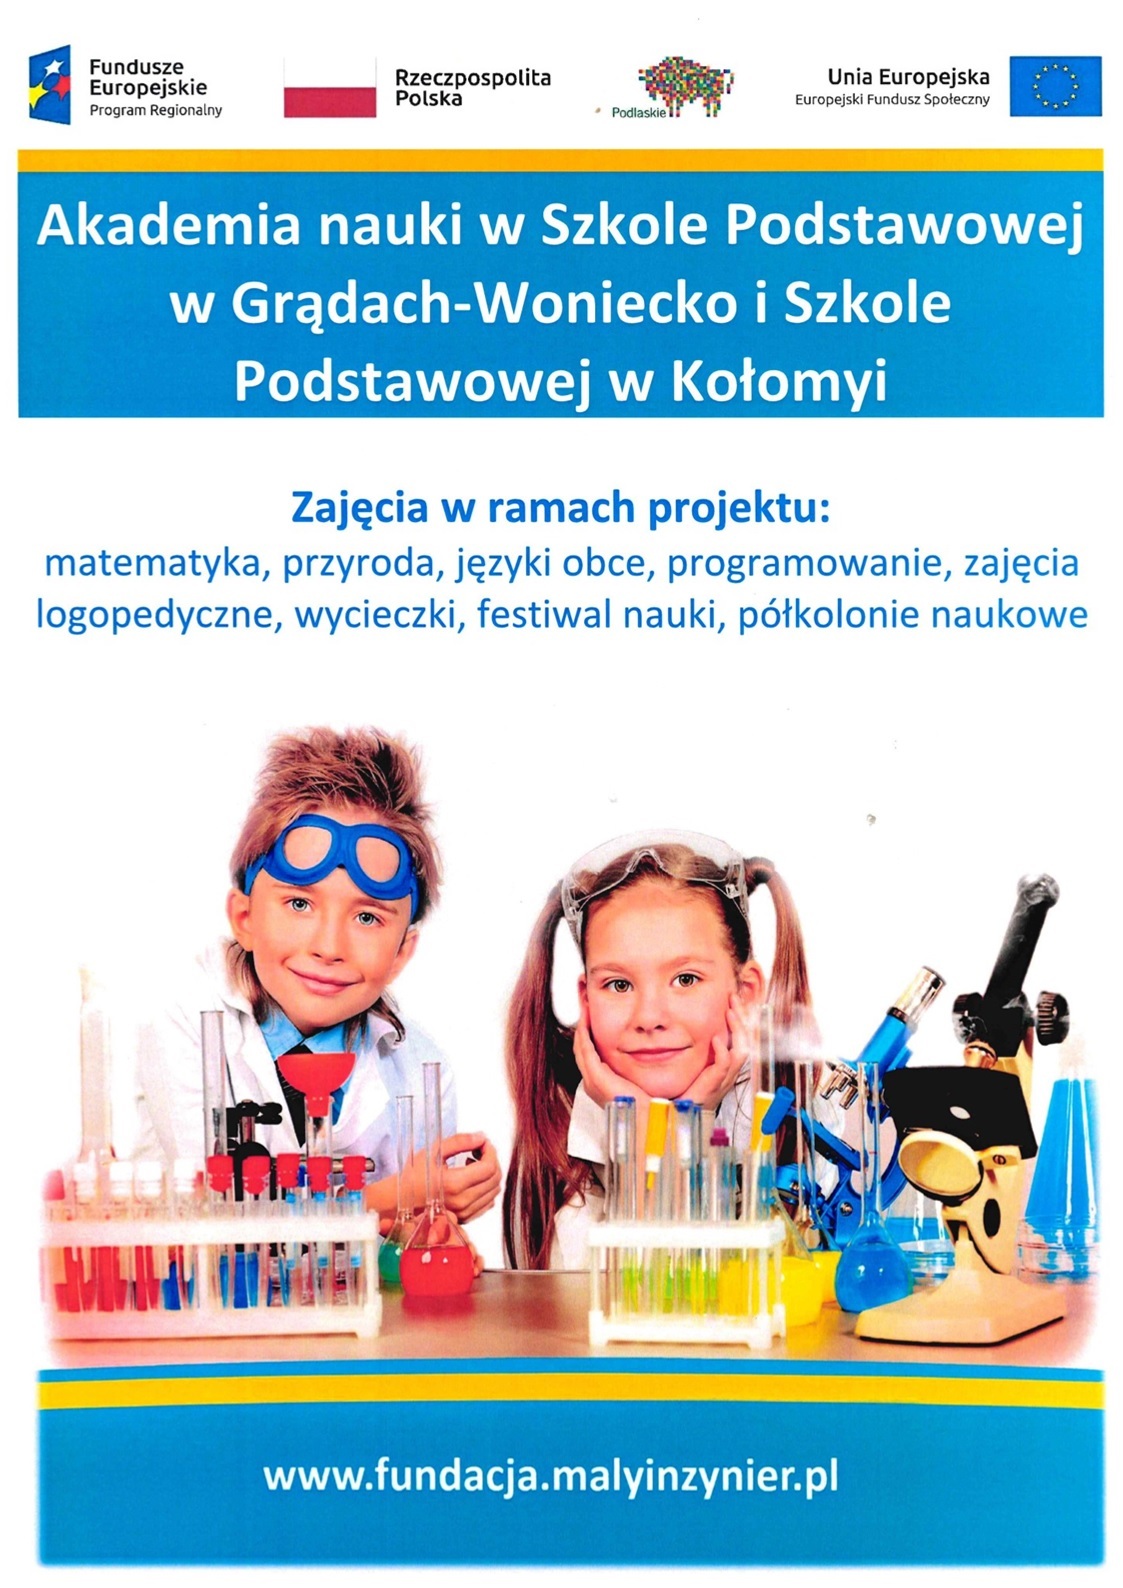 plakat dotyczący akademii nauki na zdjęciu dzieci w laboratorium